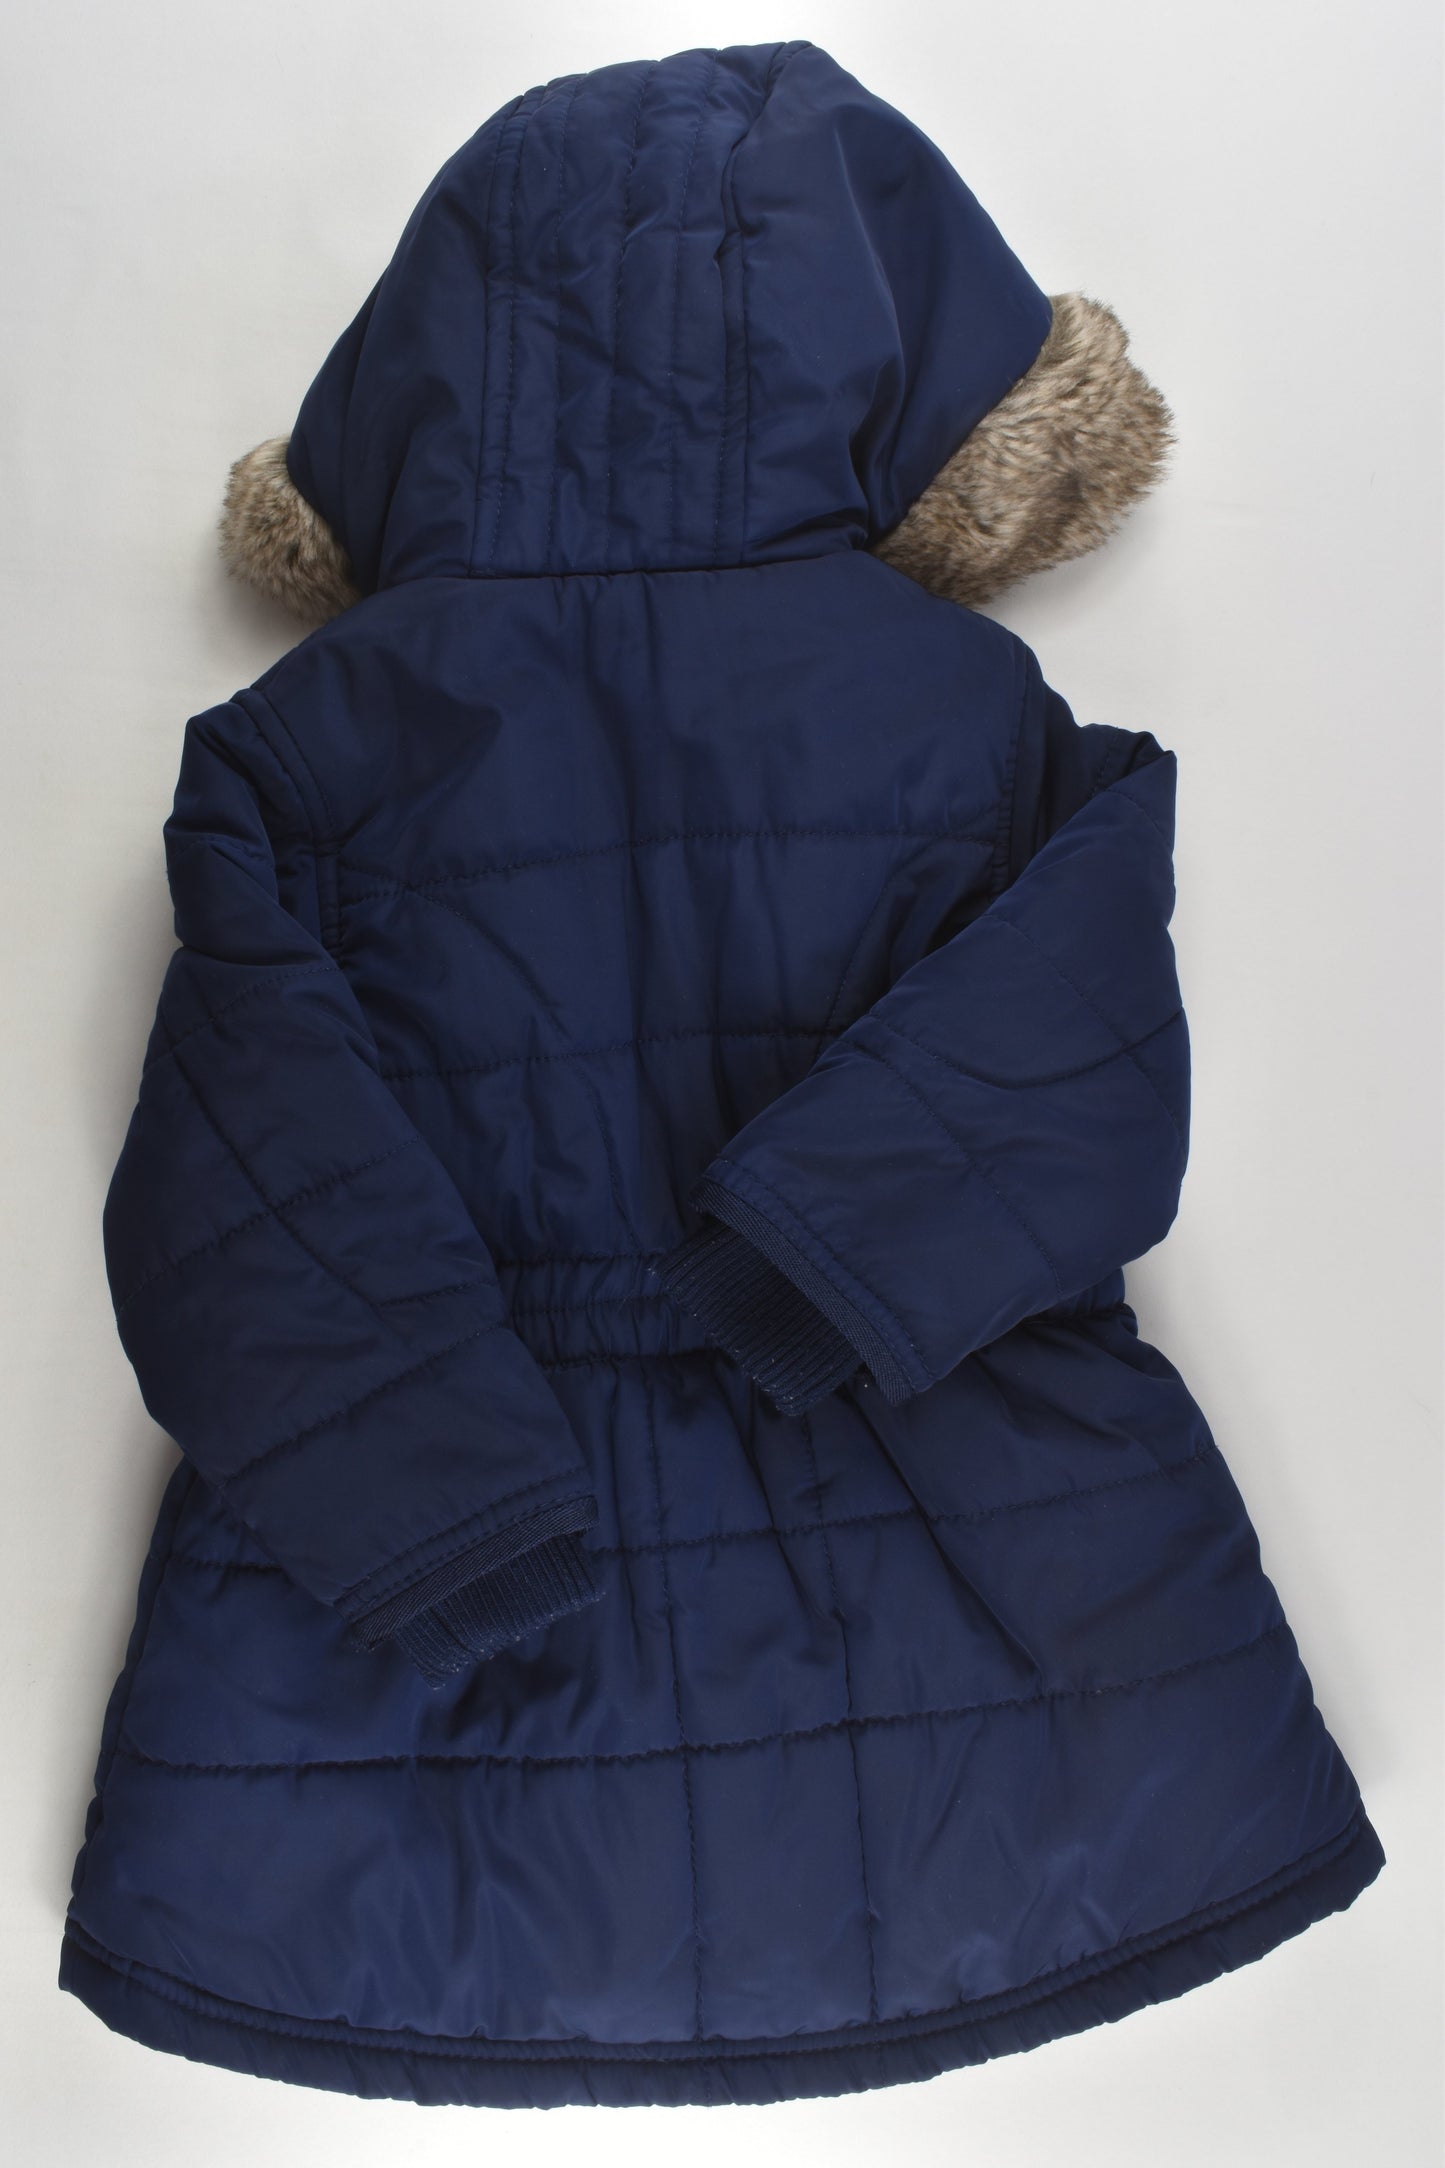 Jasper Conran by Debenhams Size 1 (12-18 months) Warm Winter Jacket